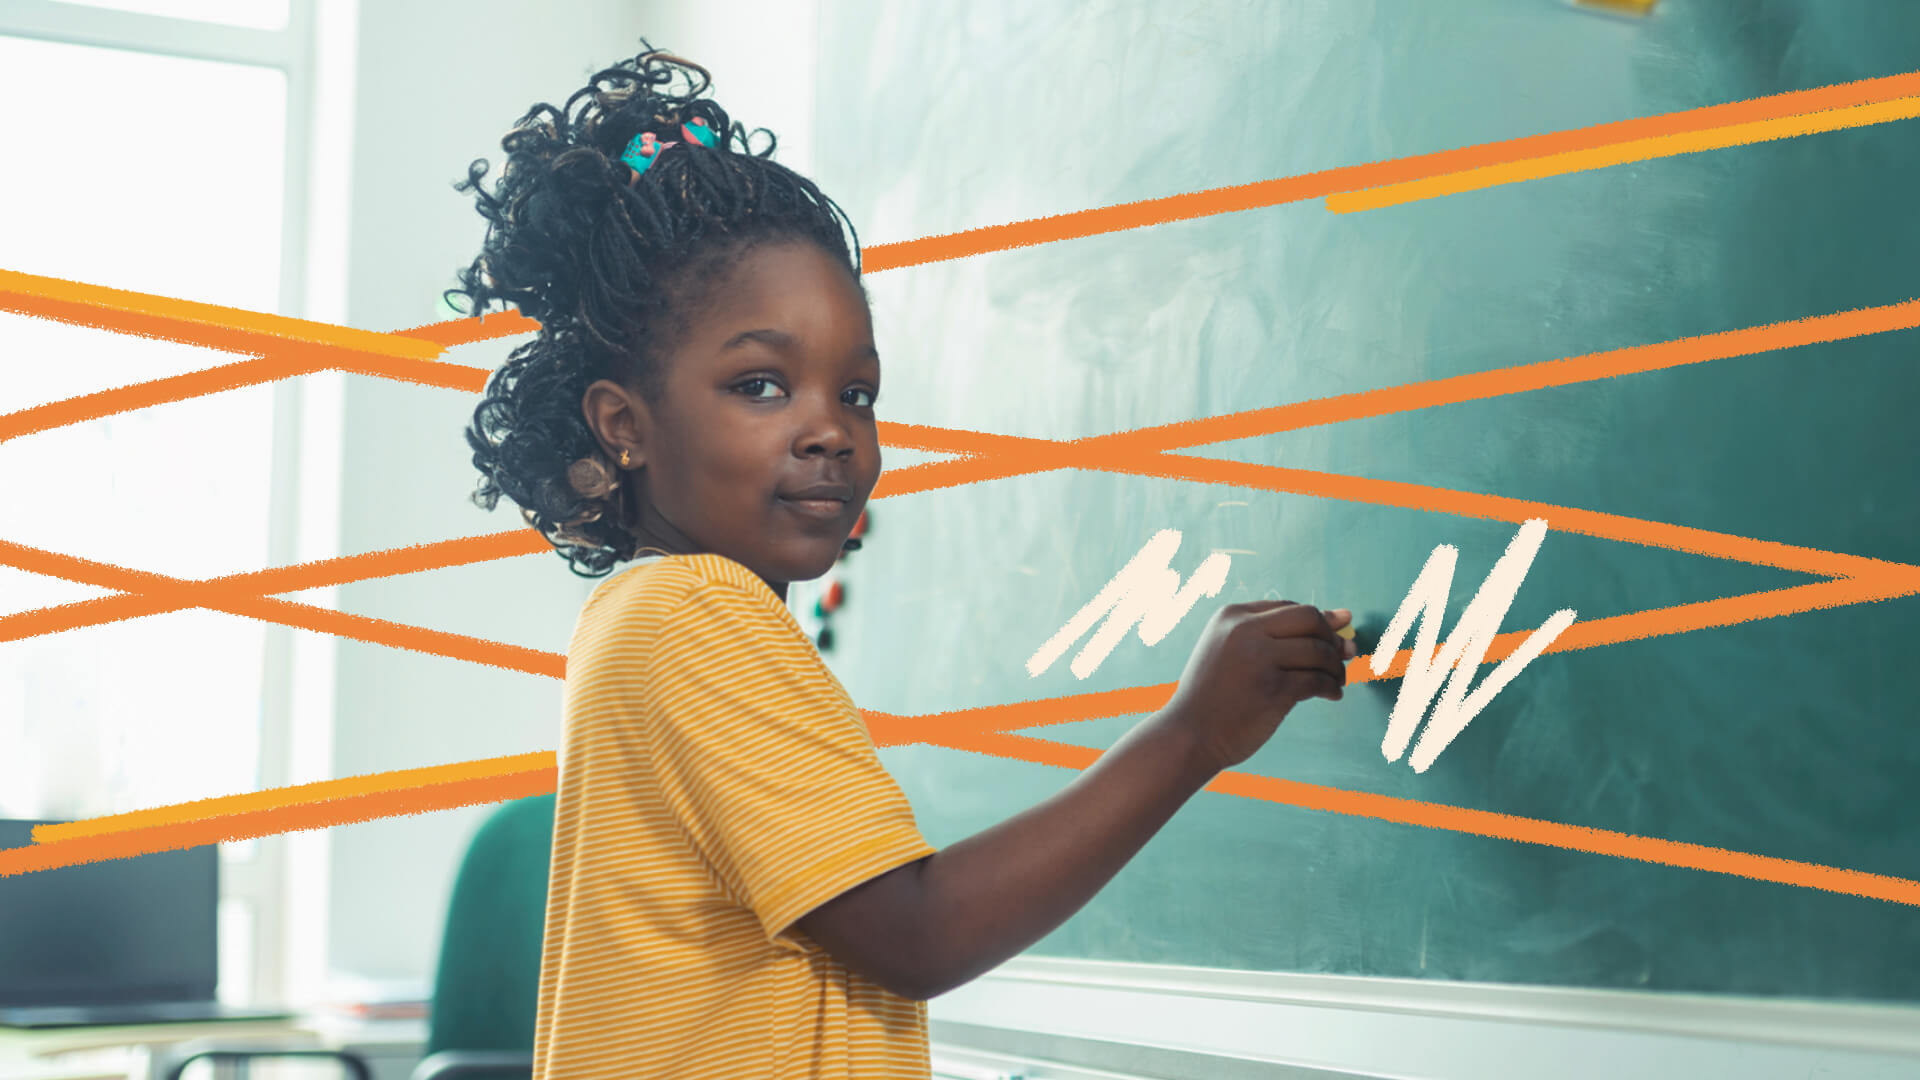 Uma menina negra usando tranças e camiseta amarela está diante de uma lousa na sala de aula prestes a escrever alguma coisa